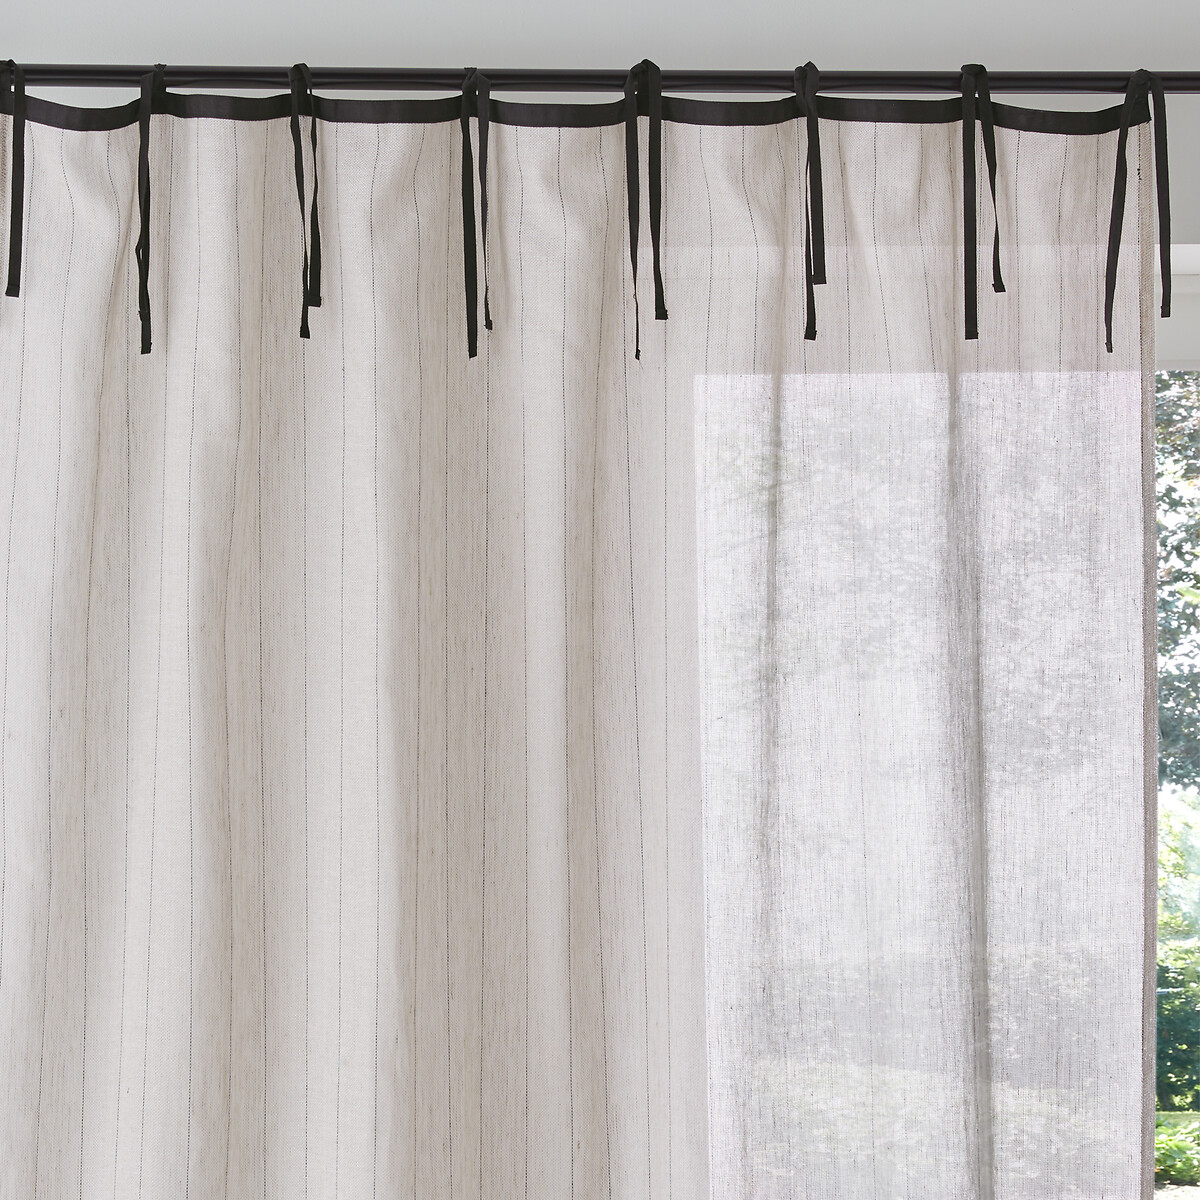 Redoute Vorhang aufhängung | La Interieurs bändern, leinen/baumwolle Redoute mit natur/schwarz La nenio,